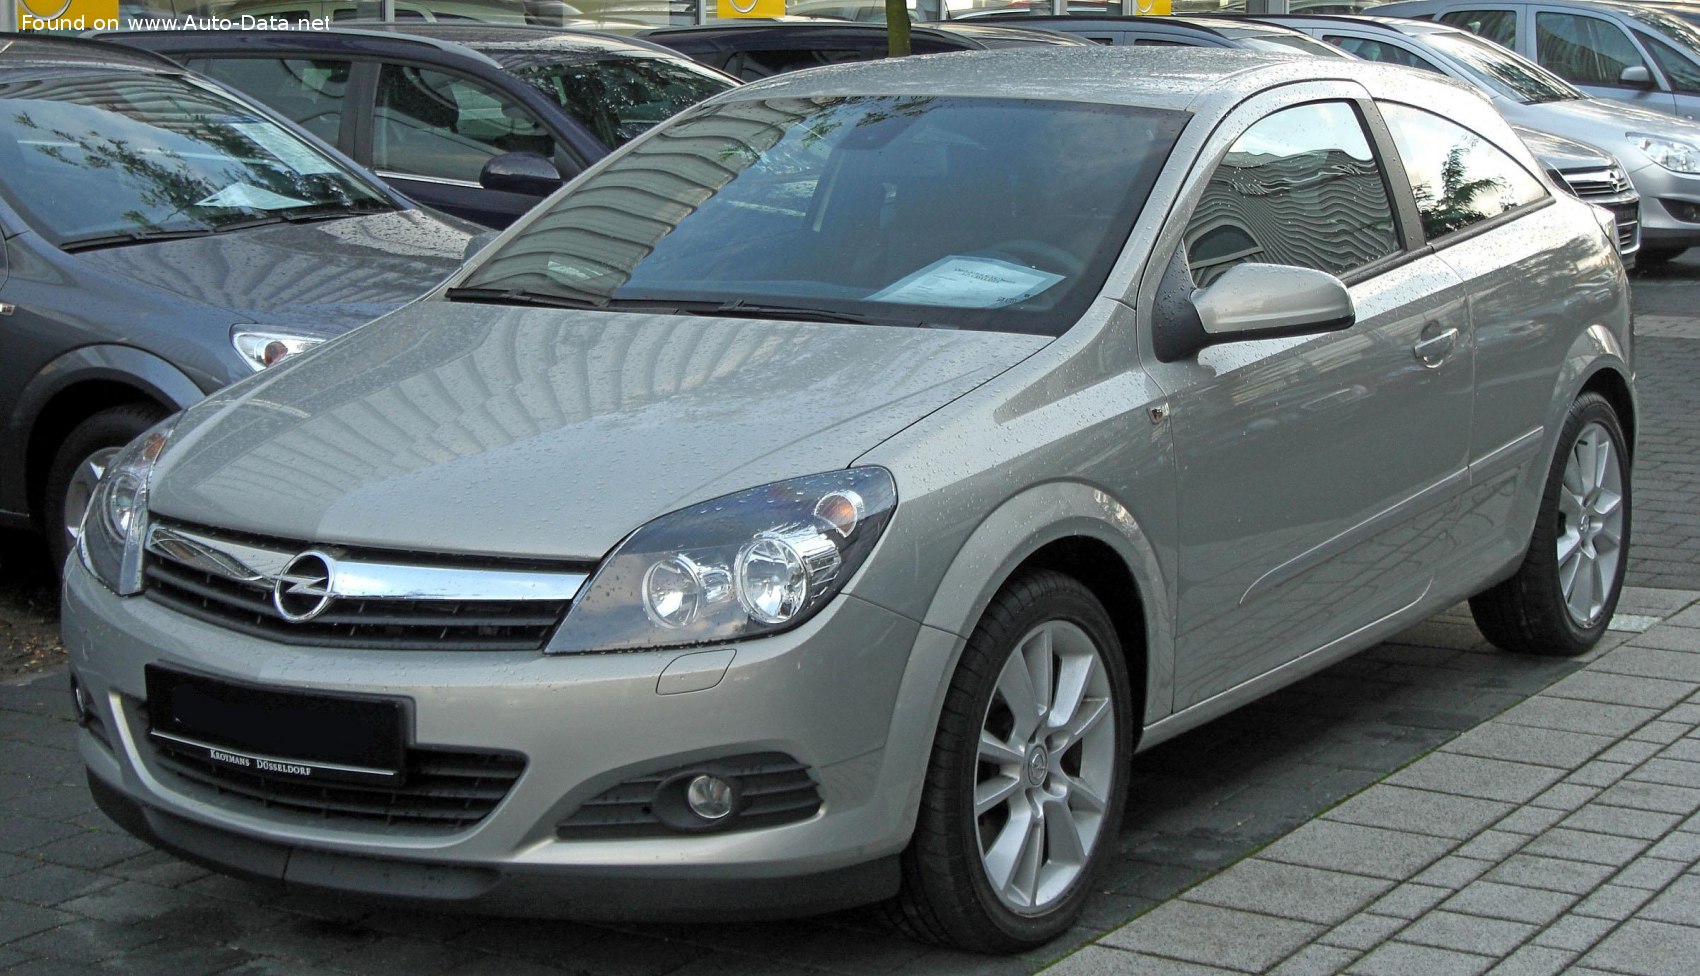 2005 Opel Astra H GTC 1.6i 16V (105 Hp)  Technical specs, data, fuel  consumption, Dimensions